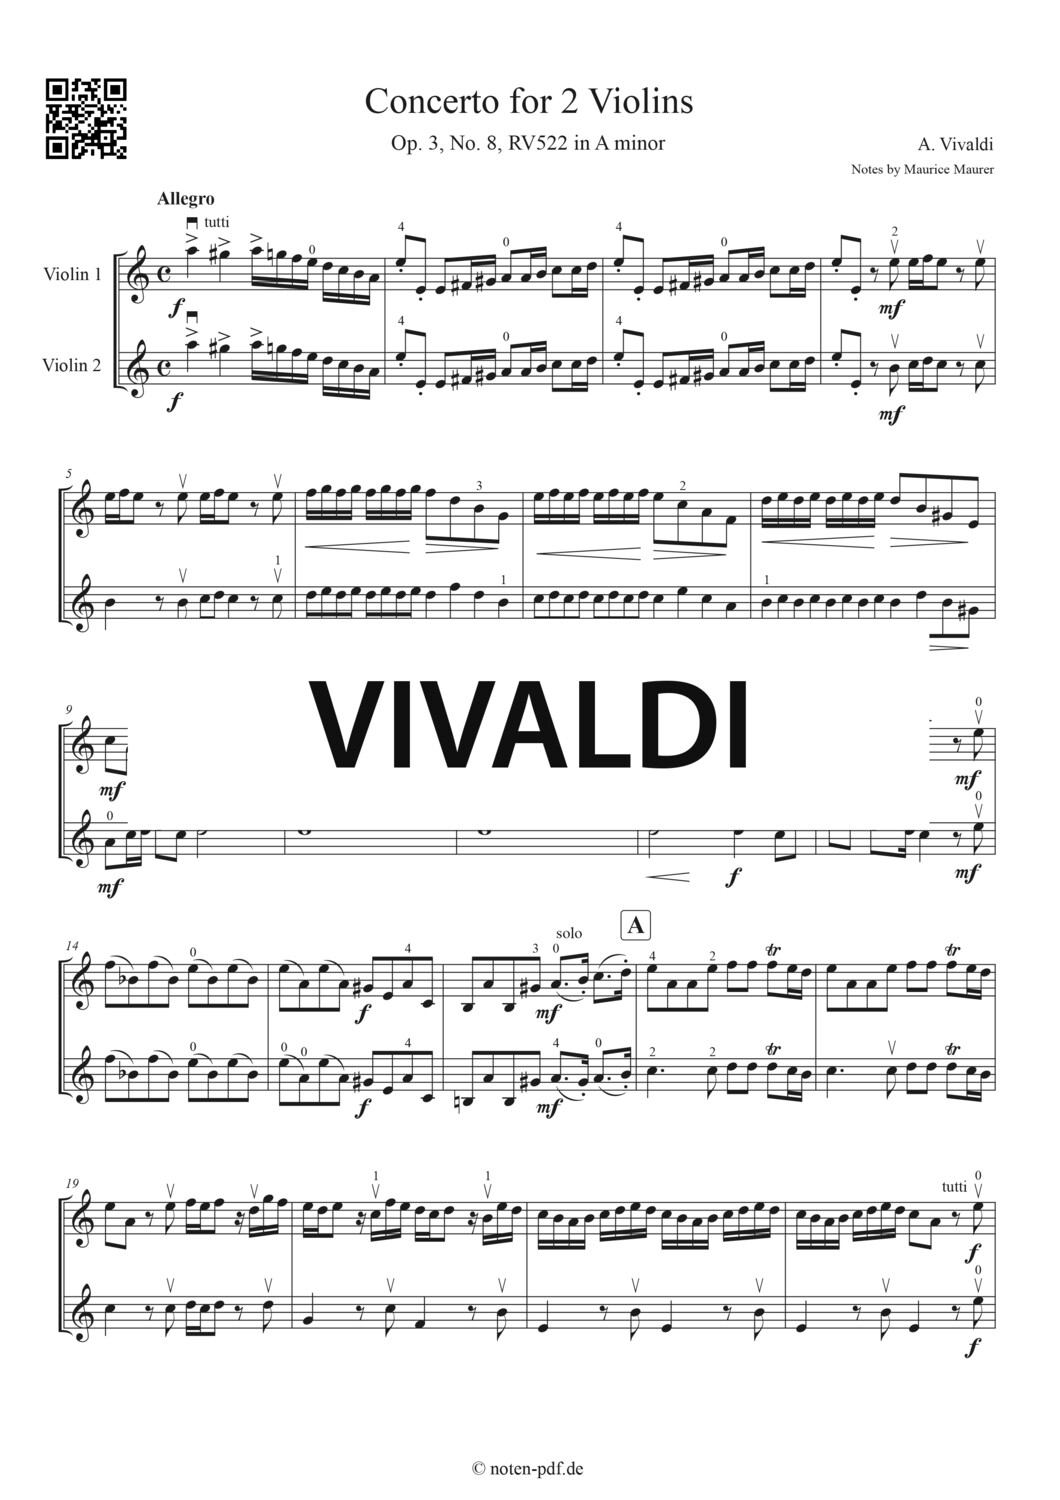 Vivaldi: Concerto for 2 Violins in A minor - All Movement